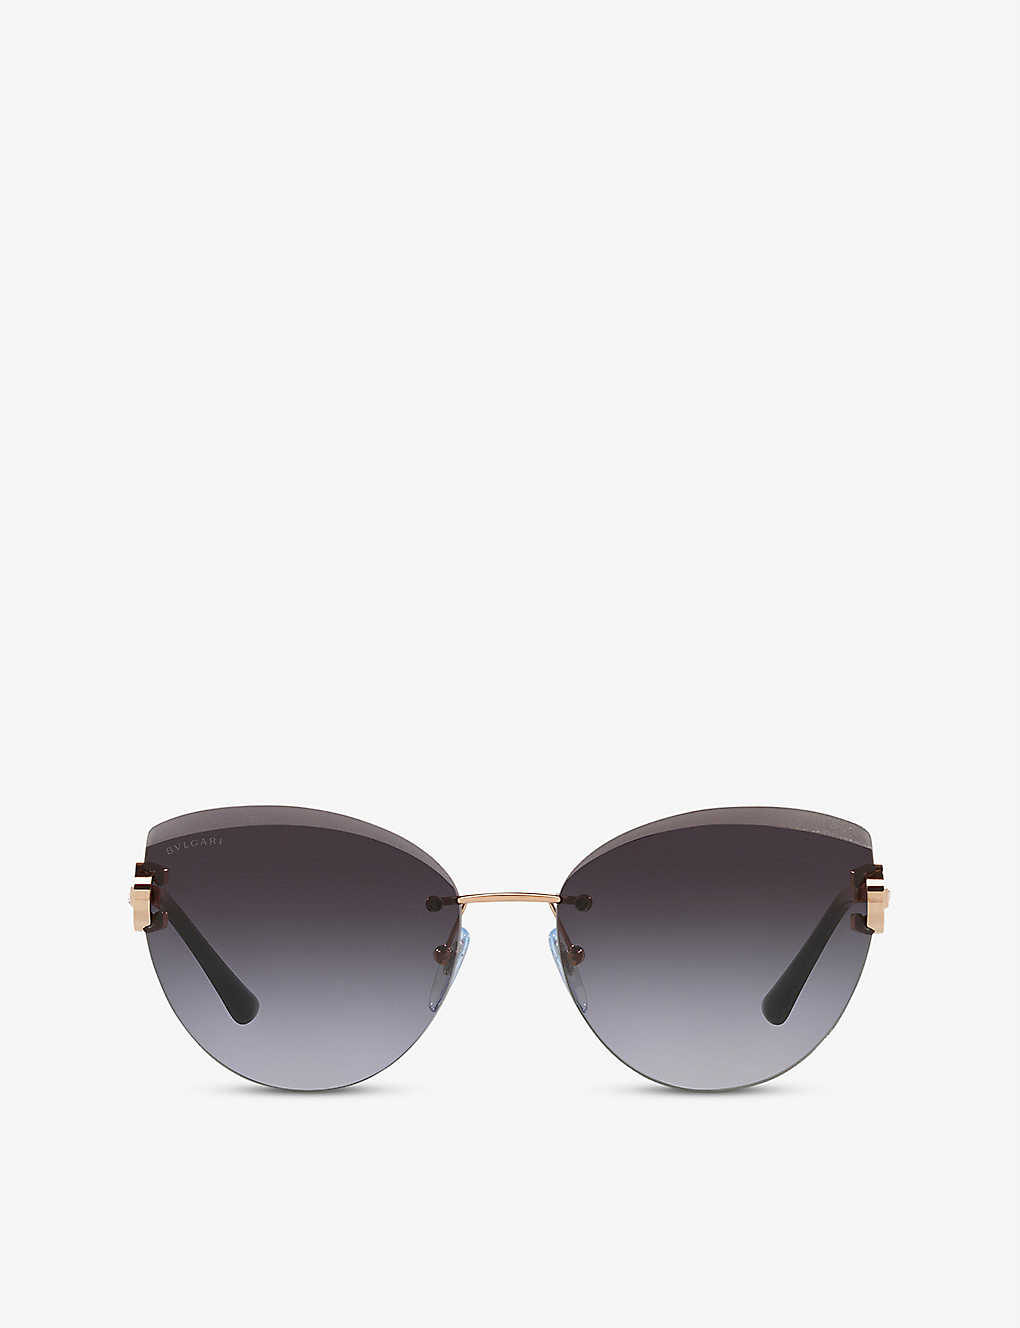 Bvlgari Bv6166b Cat-eye Gold-tone Metal Sunglasses